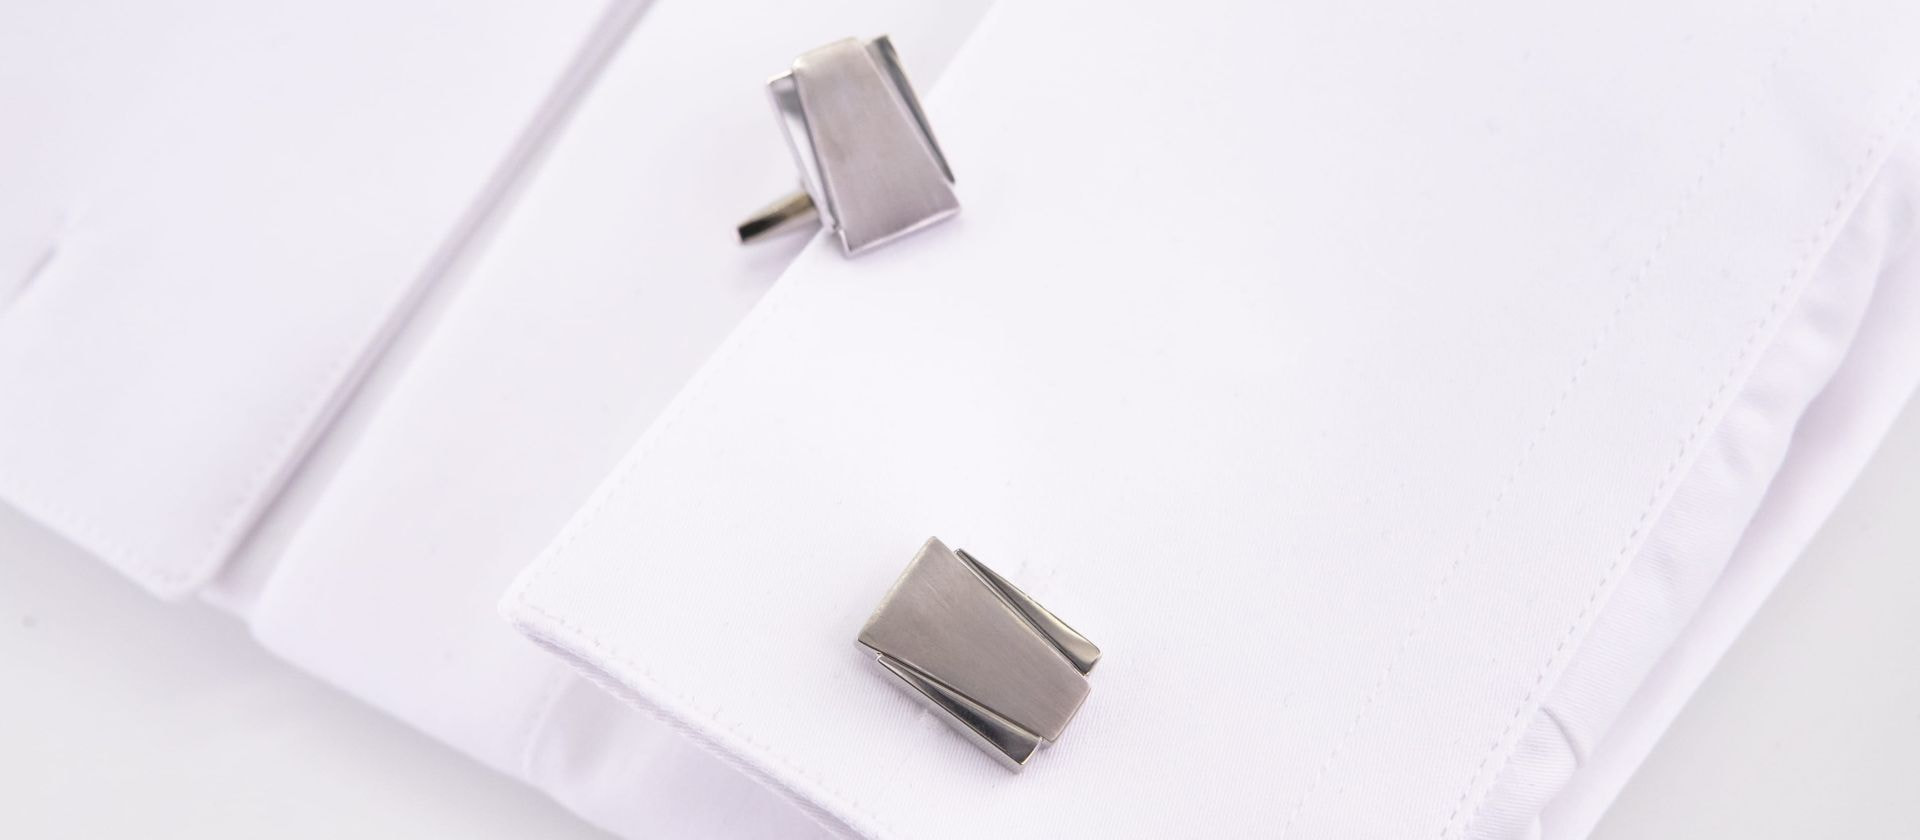 Satin stainless steel cufflinks